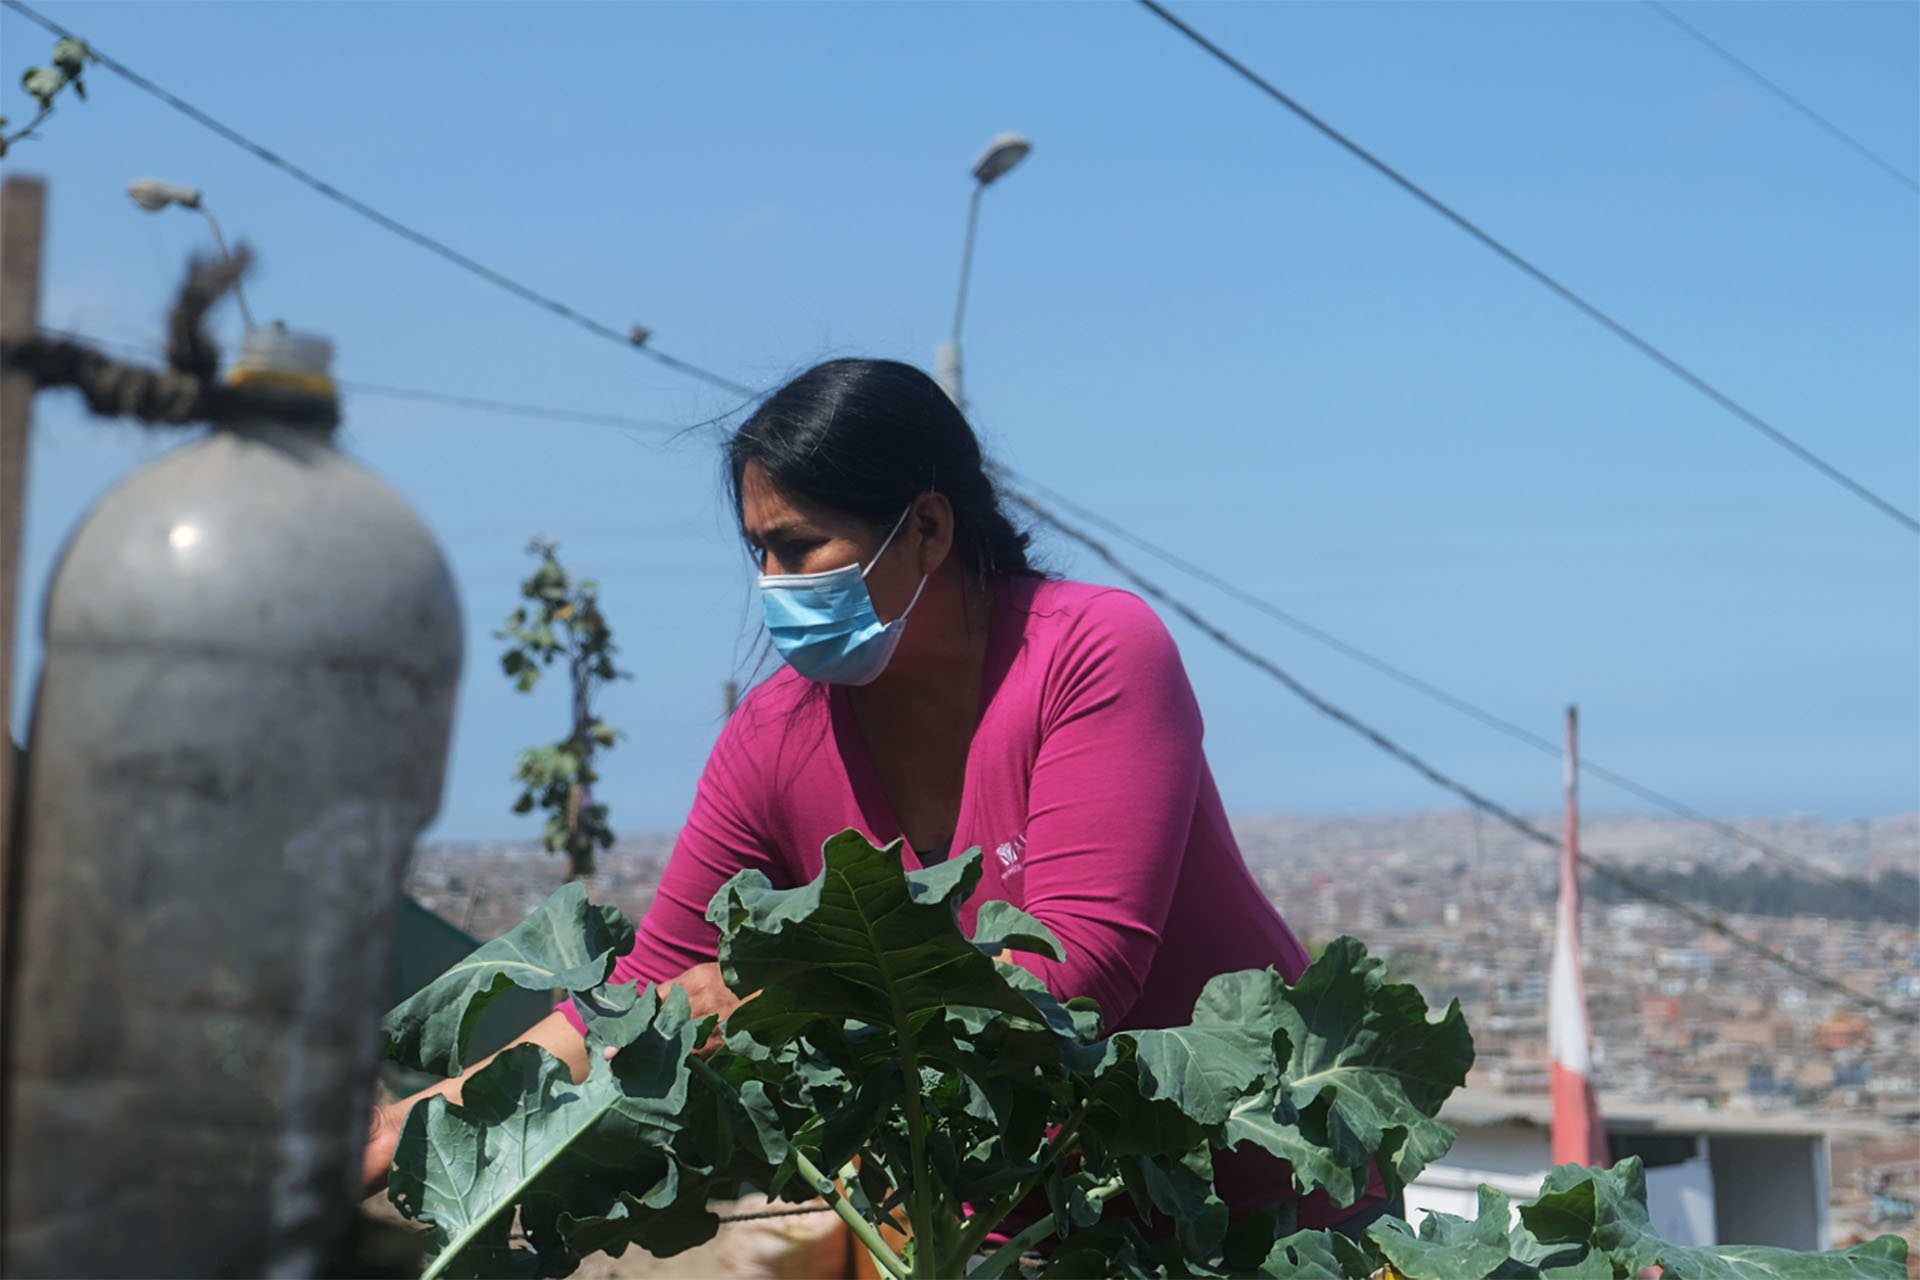 A photo of a woman tending to a garden